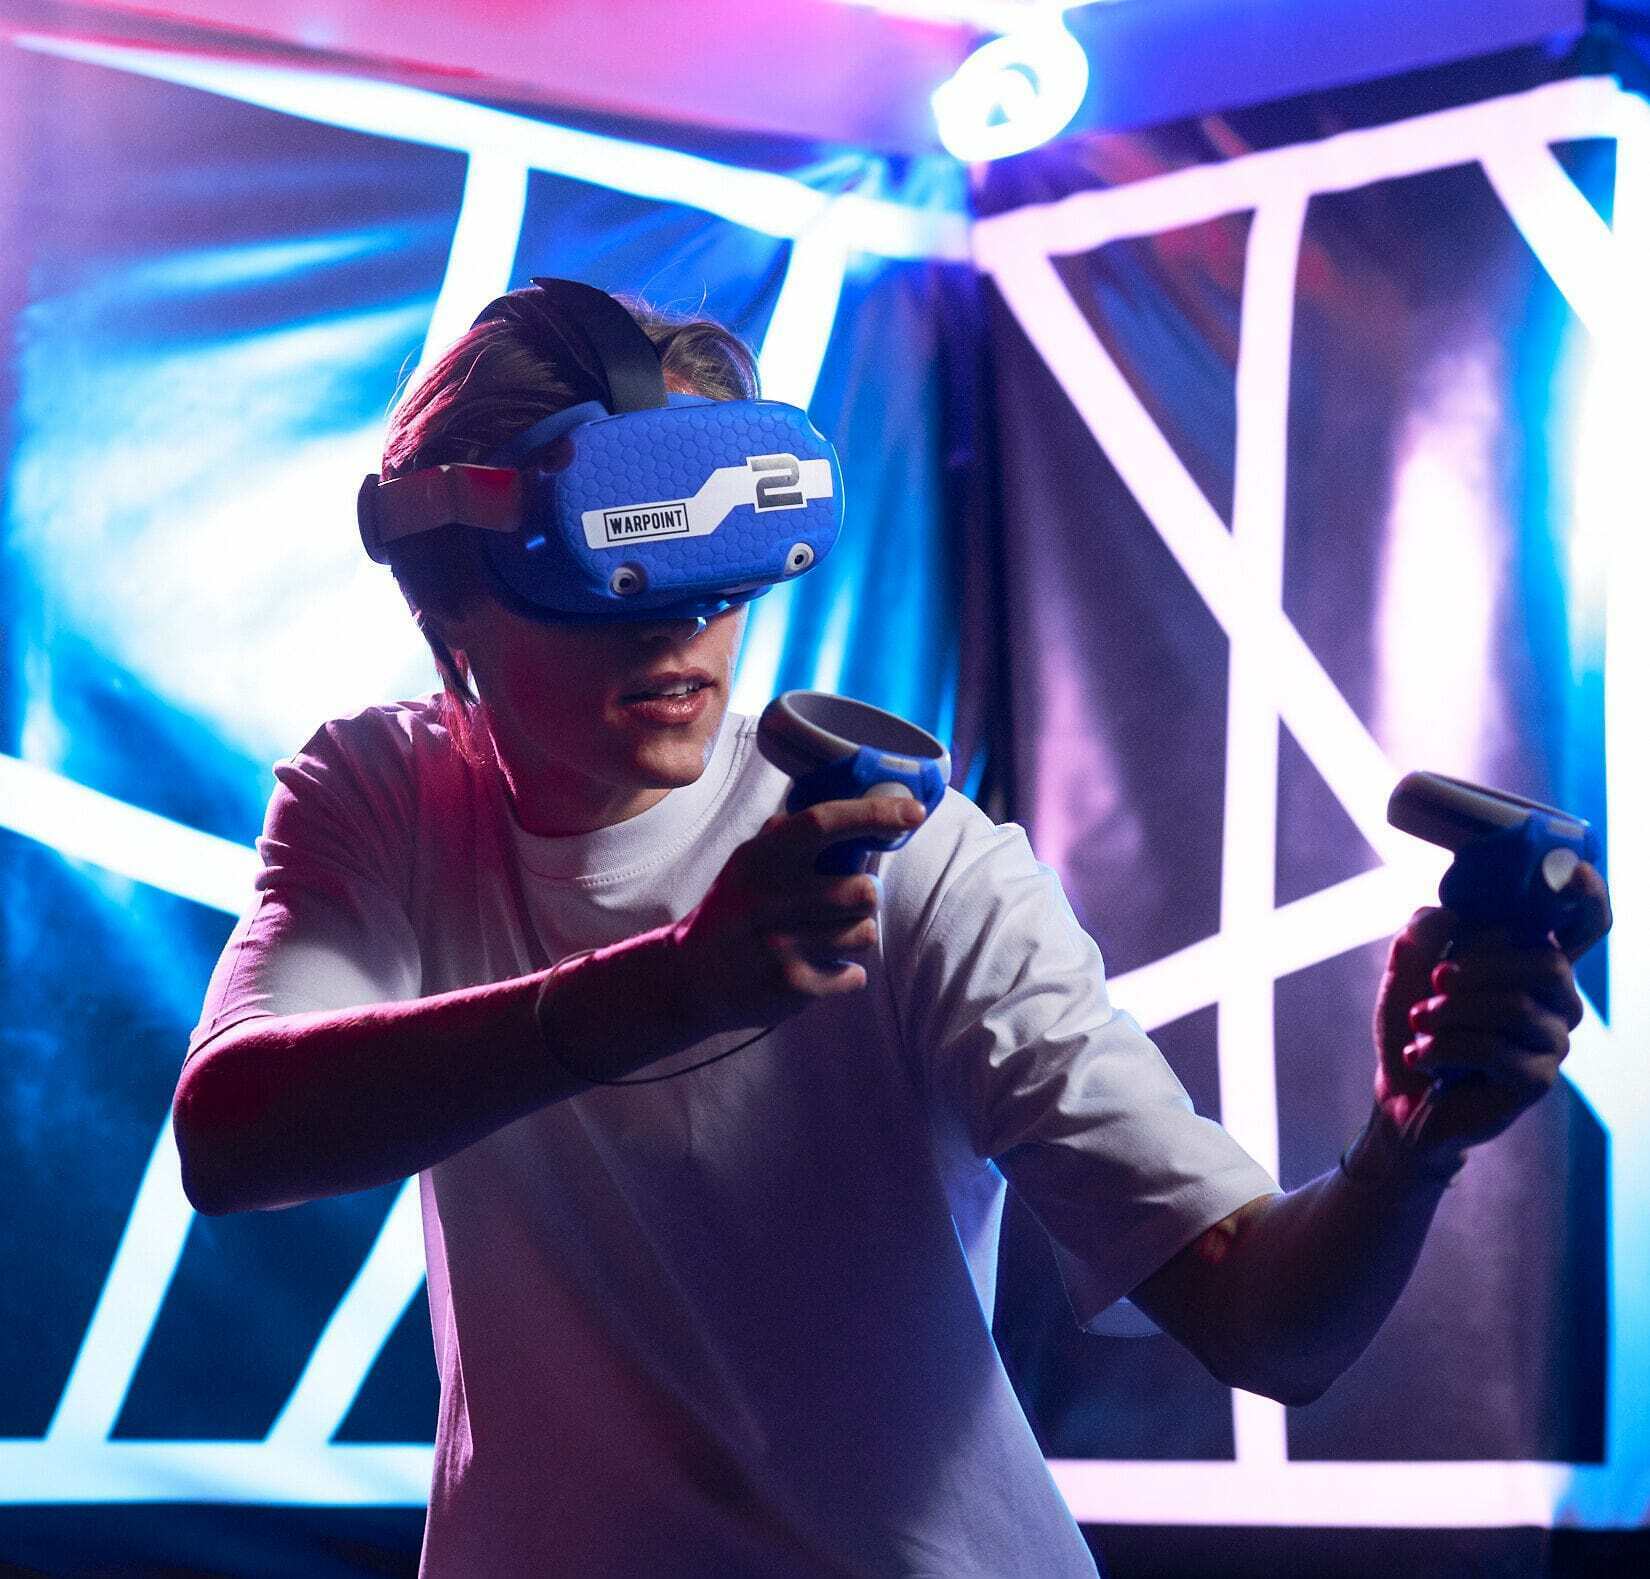 Vr арена warpoint. WARPOINT VR-Арена. Клуб виртуальной реальности WARPOINT. Виртуальная реальность Тюмень. Лазертаг ВР.